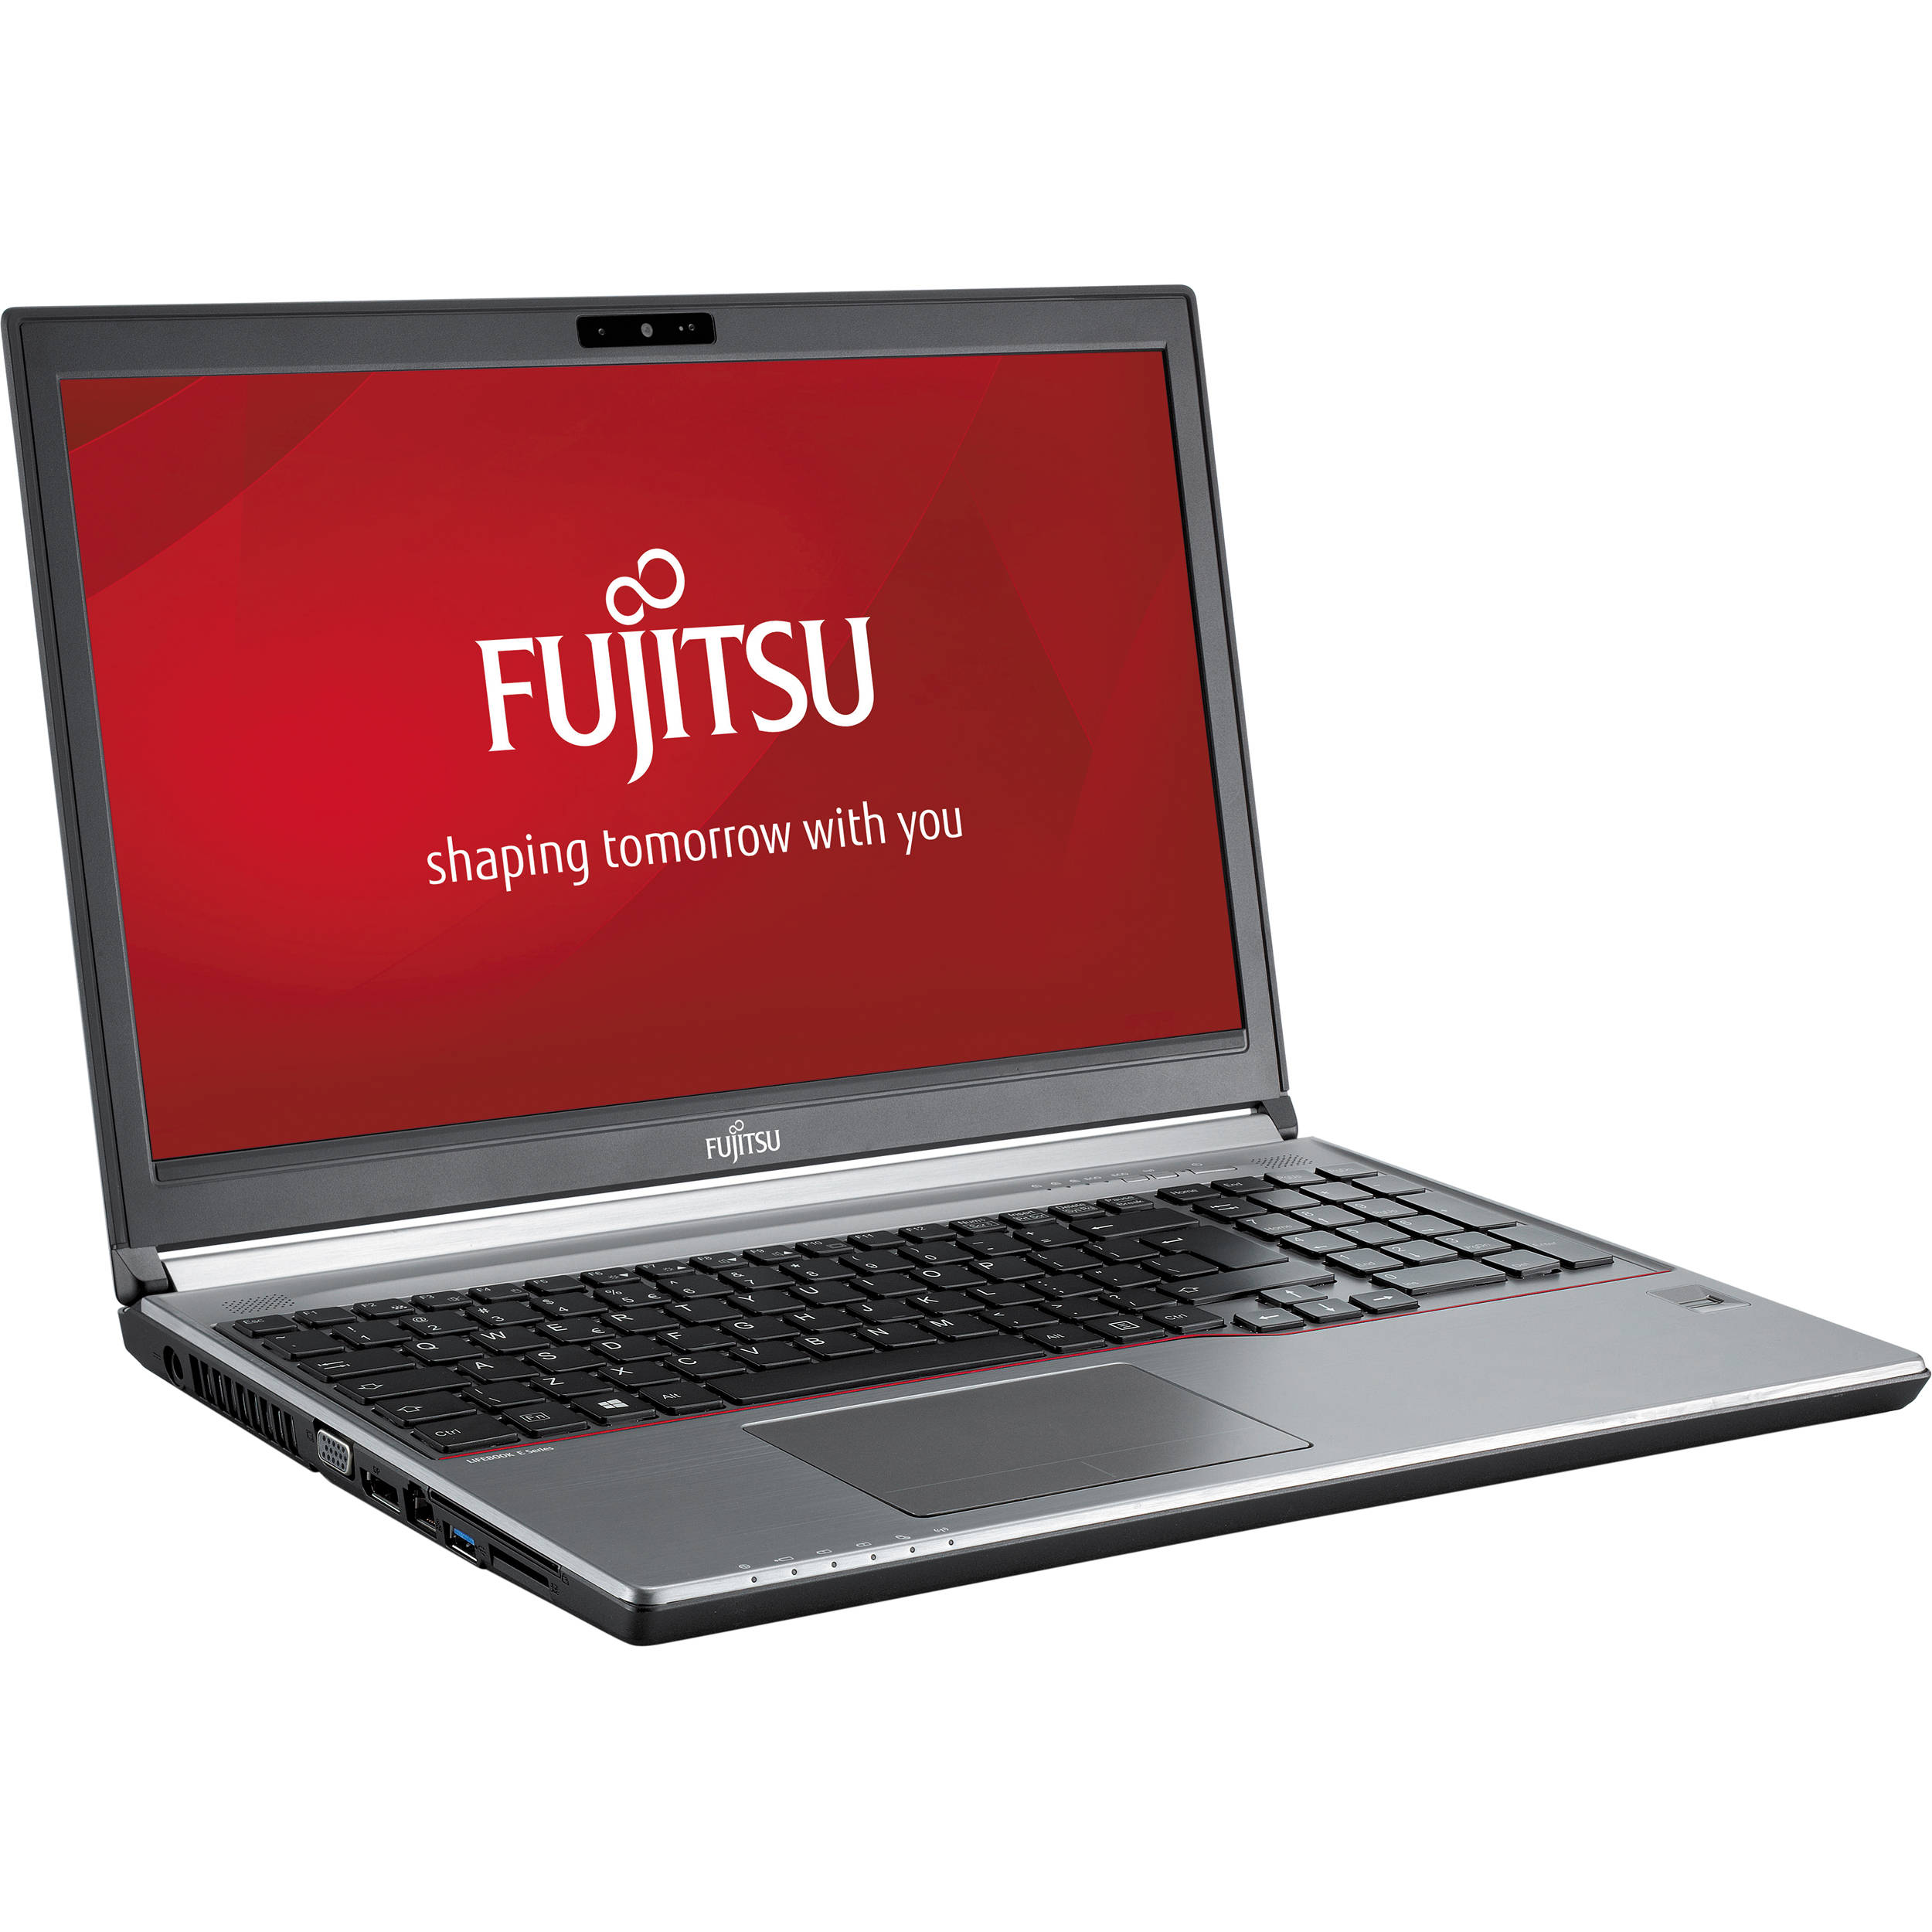 Laptop FUJITSU SIEMENS Lifebook E753, Intel Core i5-3230M 2.60GHz, 8GB DDR3, 120GB SSD, DVD-RW, 15.6 Inch, Tastatura Numerica, Fara Webcam, Grad A-